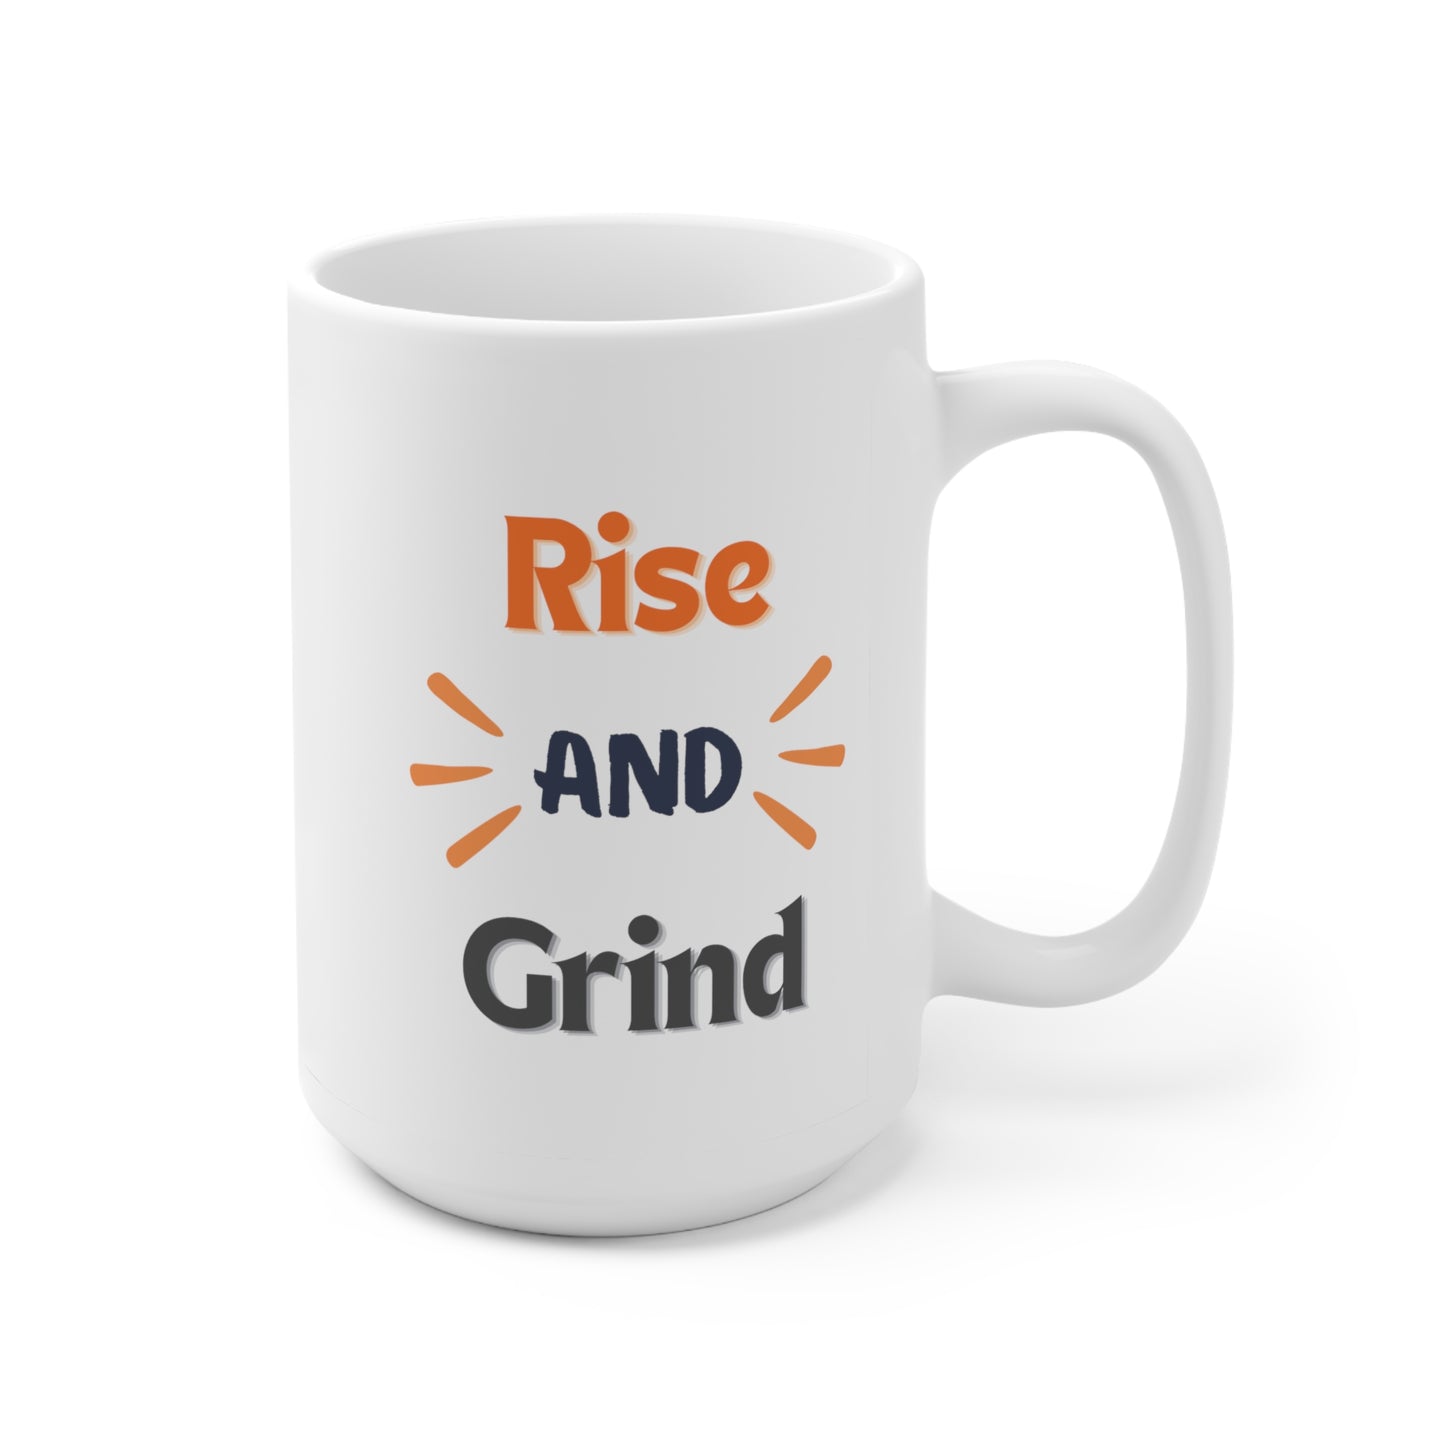 Rise and Grind, Motivational Coffee Mug, Dishwasher Safe, Microwave Safe, 15oz Ceramic Mug